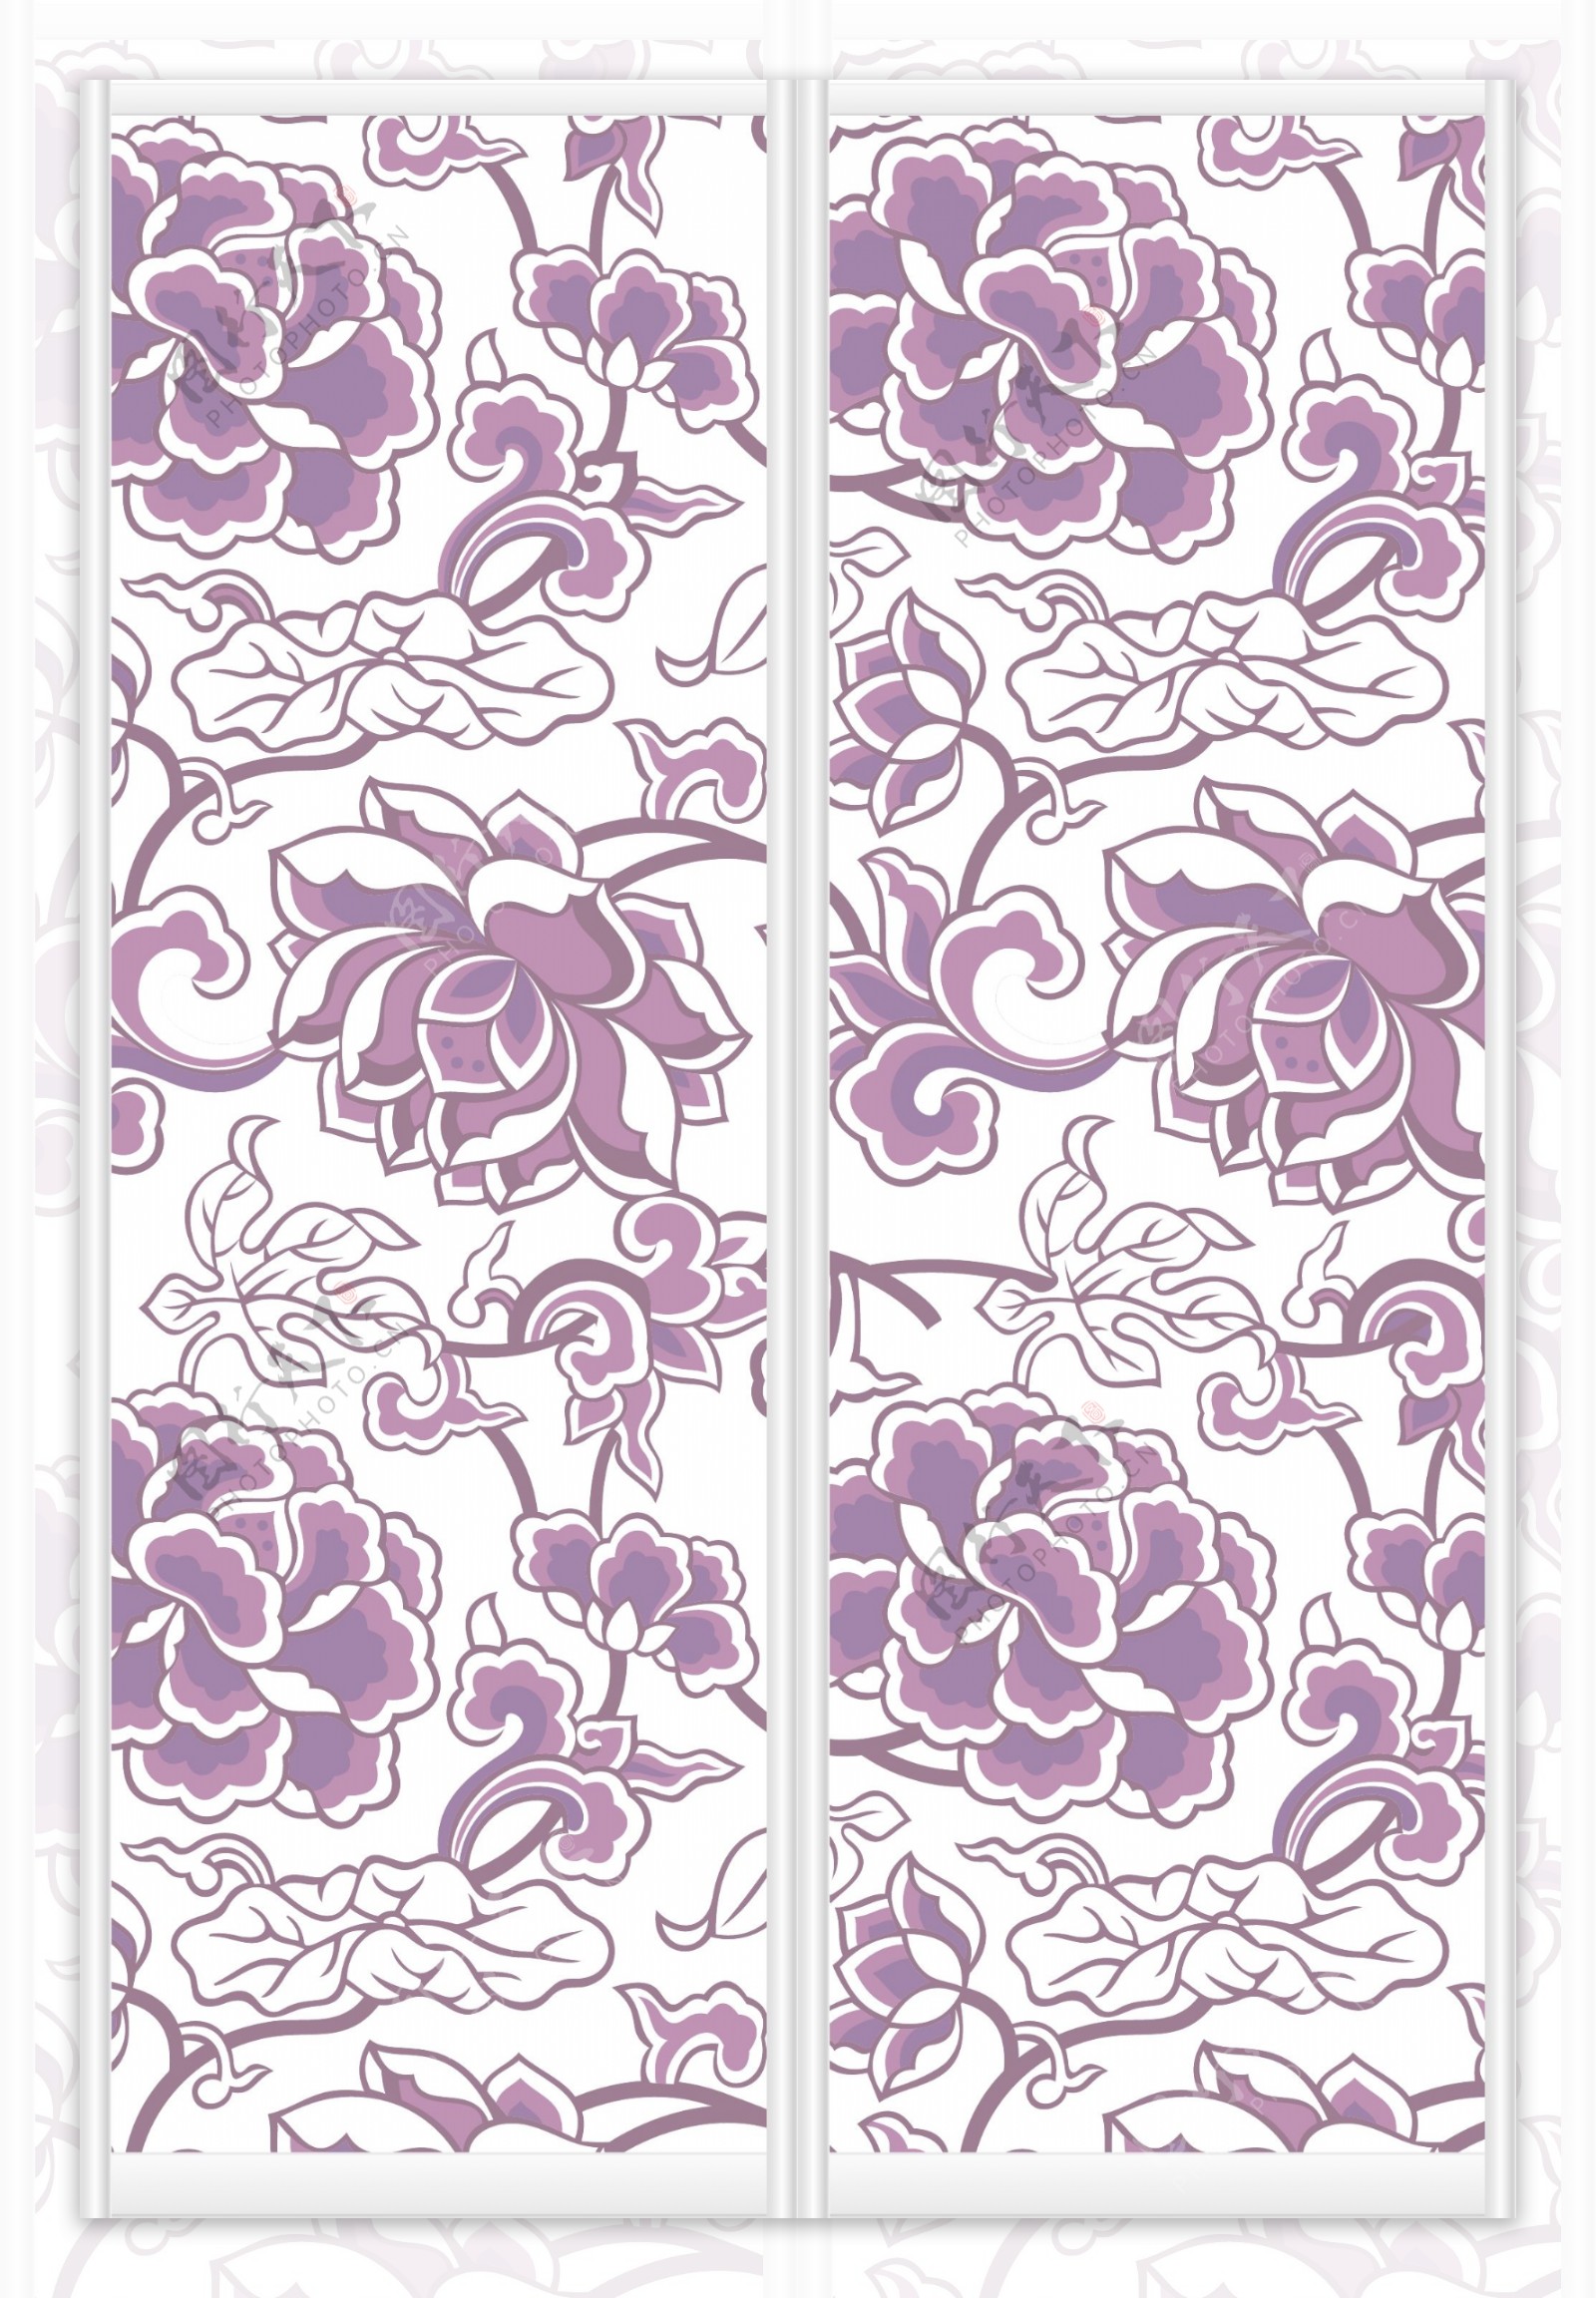 紫色牡丹花纹矢量图库下载